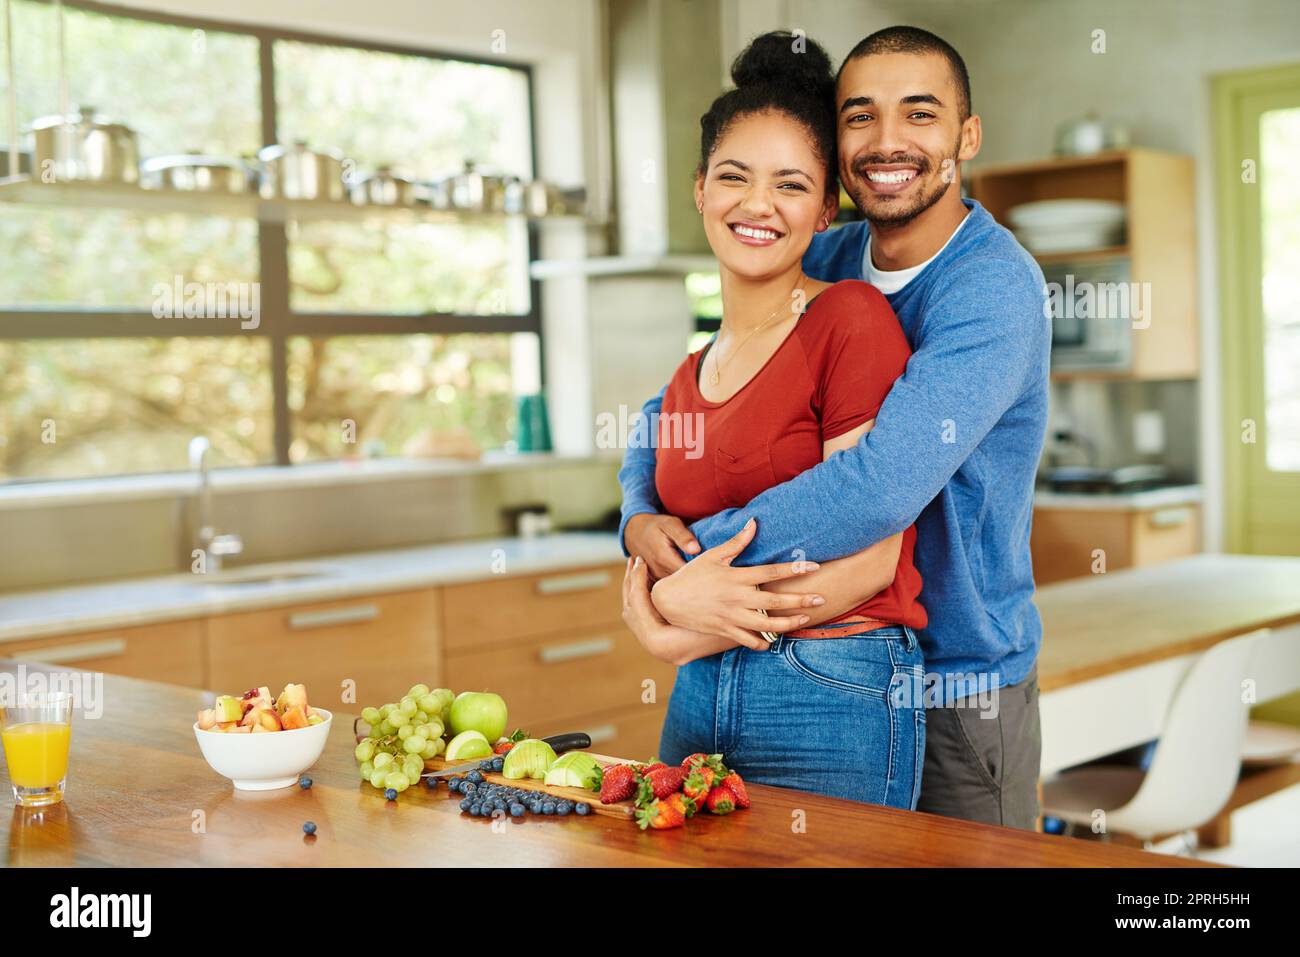 Haben unseren gesunden Lebensstil geliebt. Ein Porträt eines hübschen jungen Mannes, der seine Frau umarmt, während sie in der Küche einen Obstsalat macht. Stockfoto